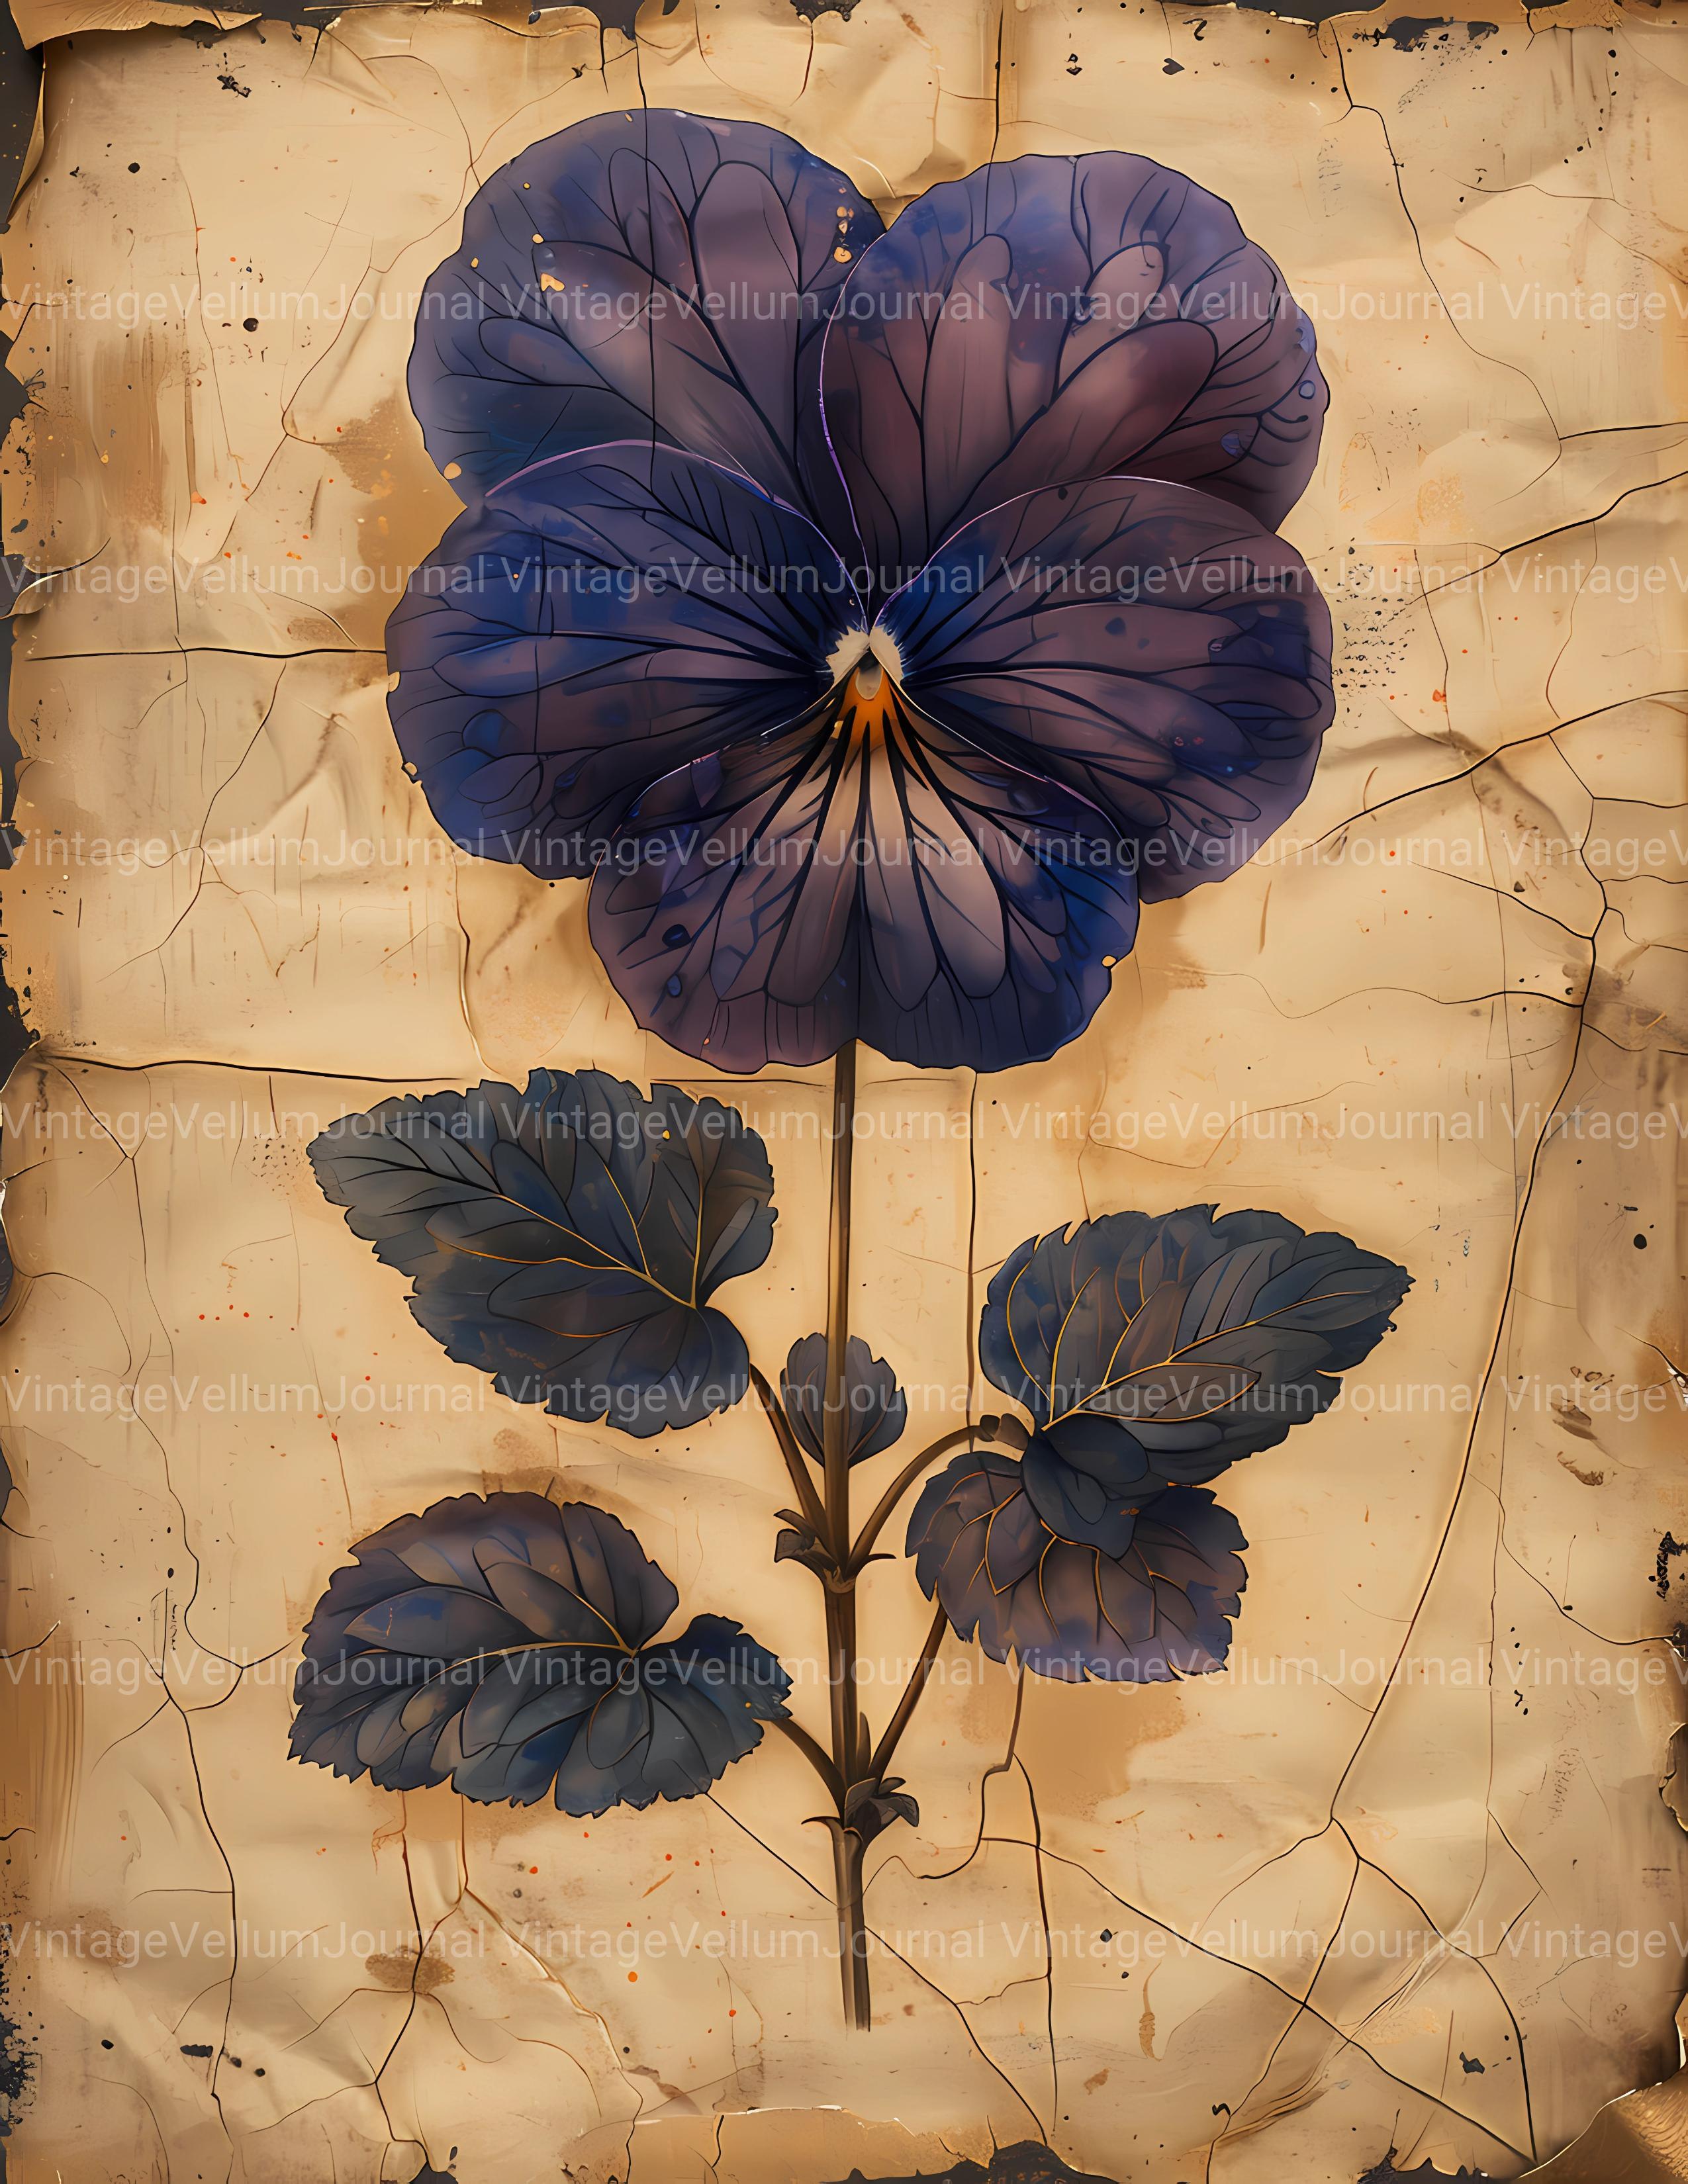 Violets Flowers Junk Journal Pages - CraftNest